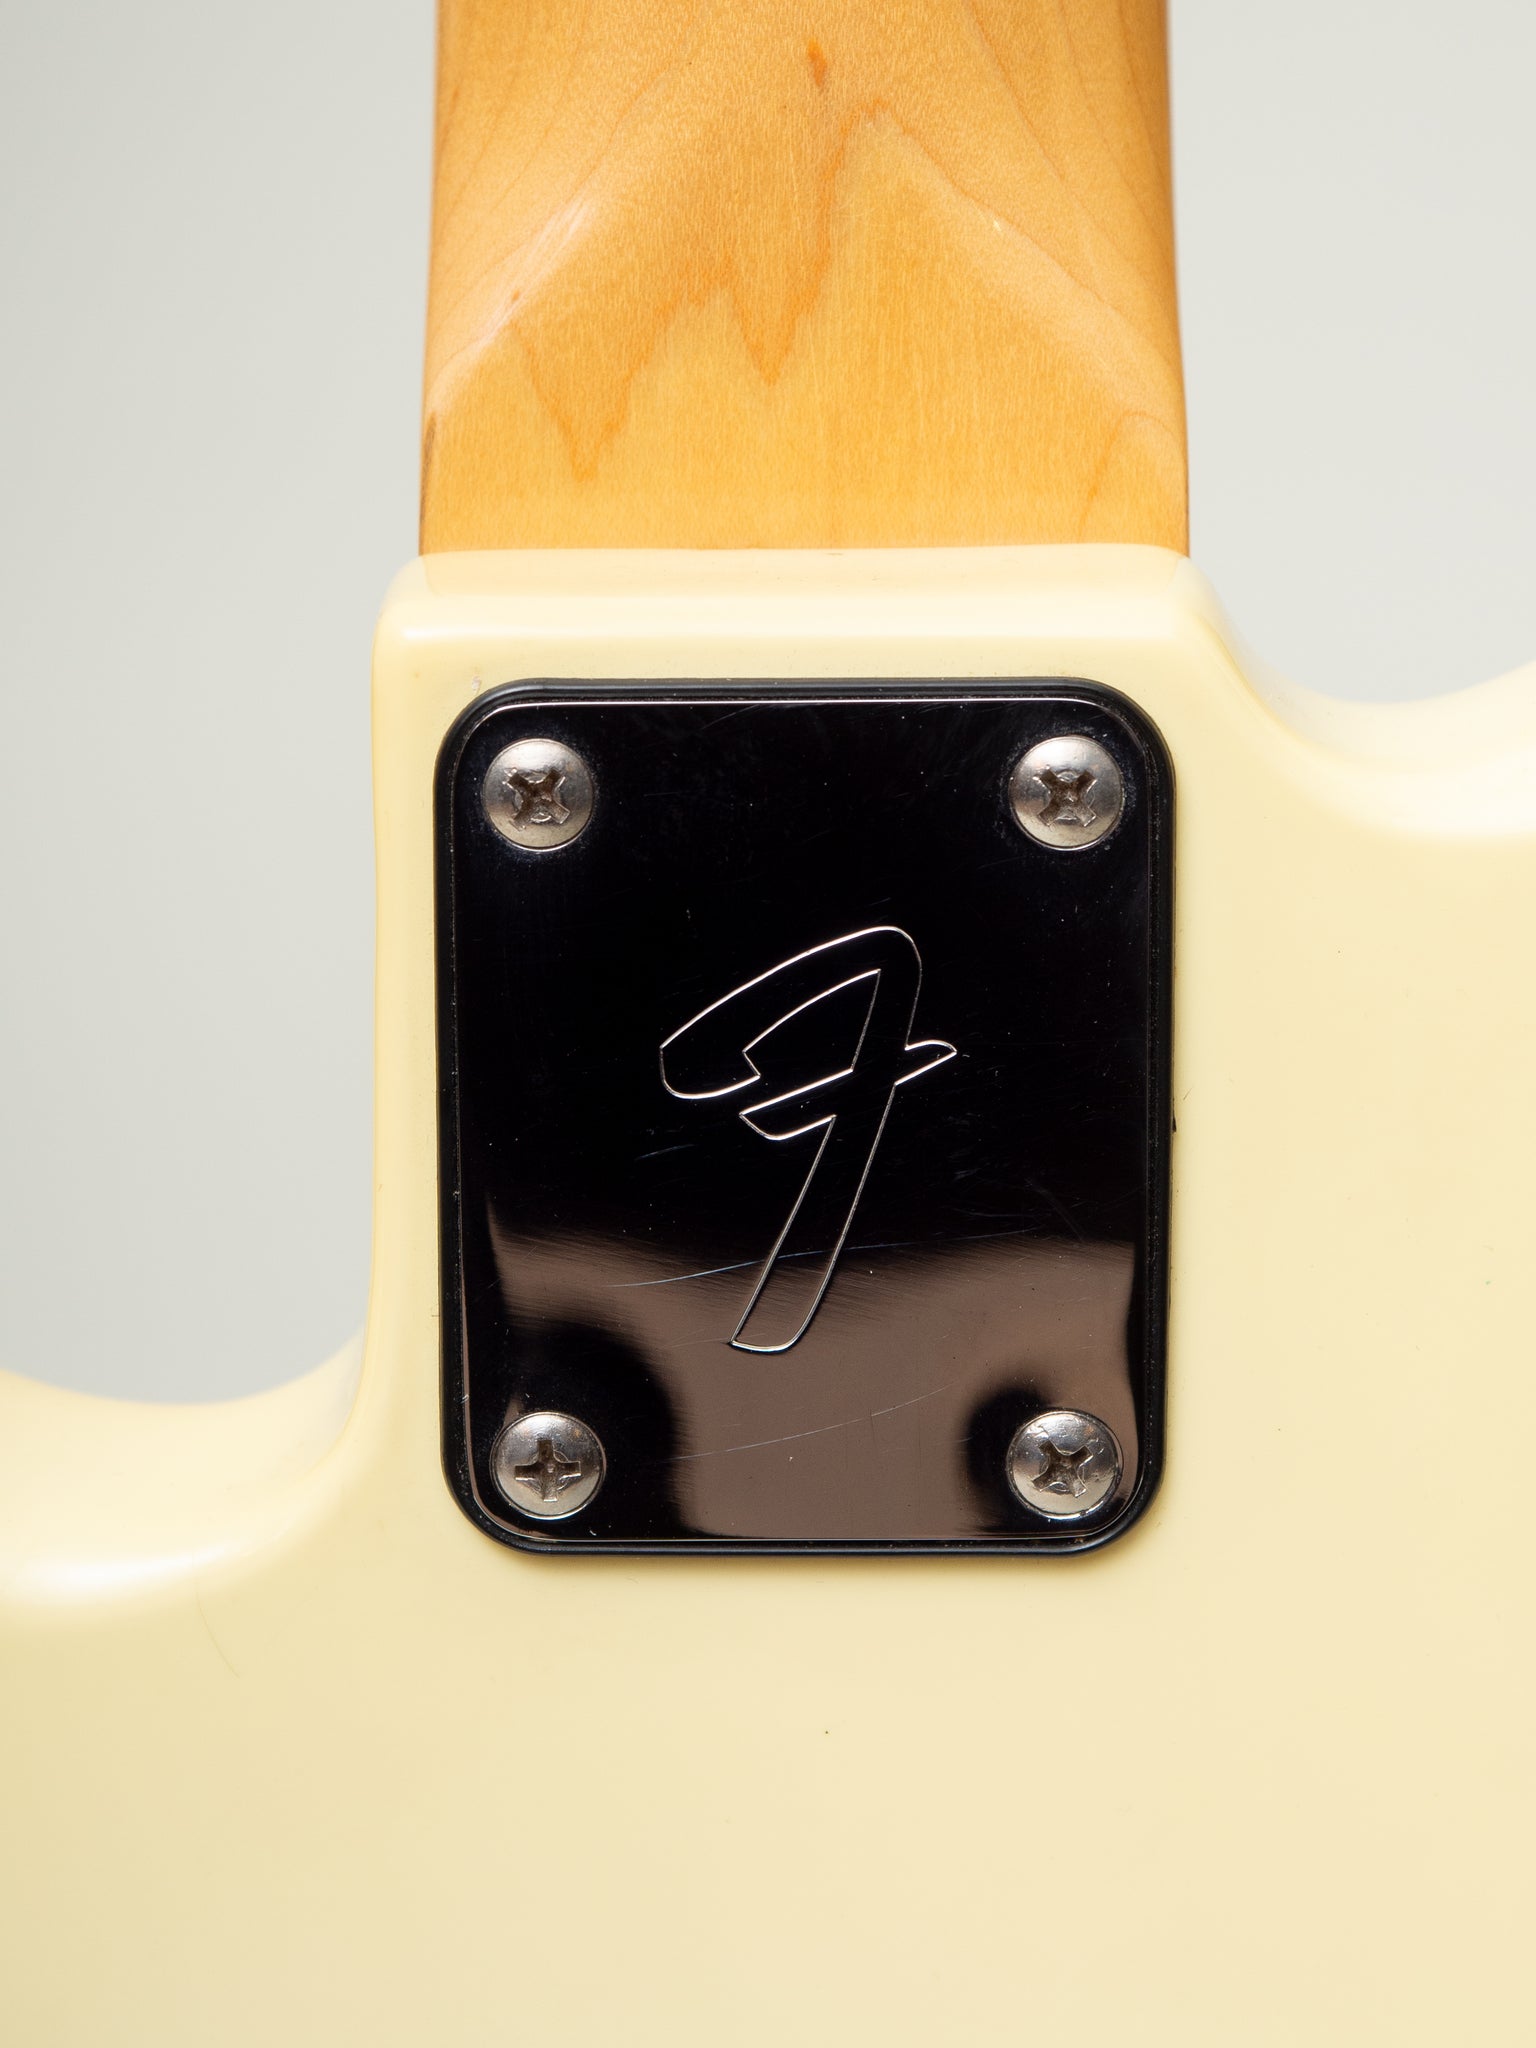 1980 Fender Precision Bass